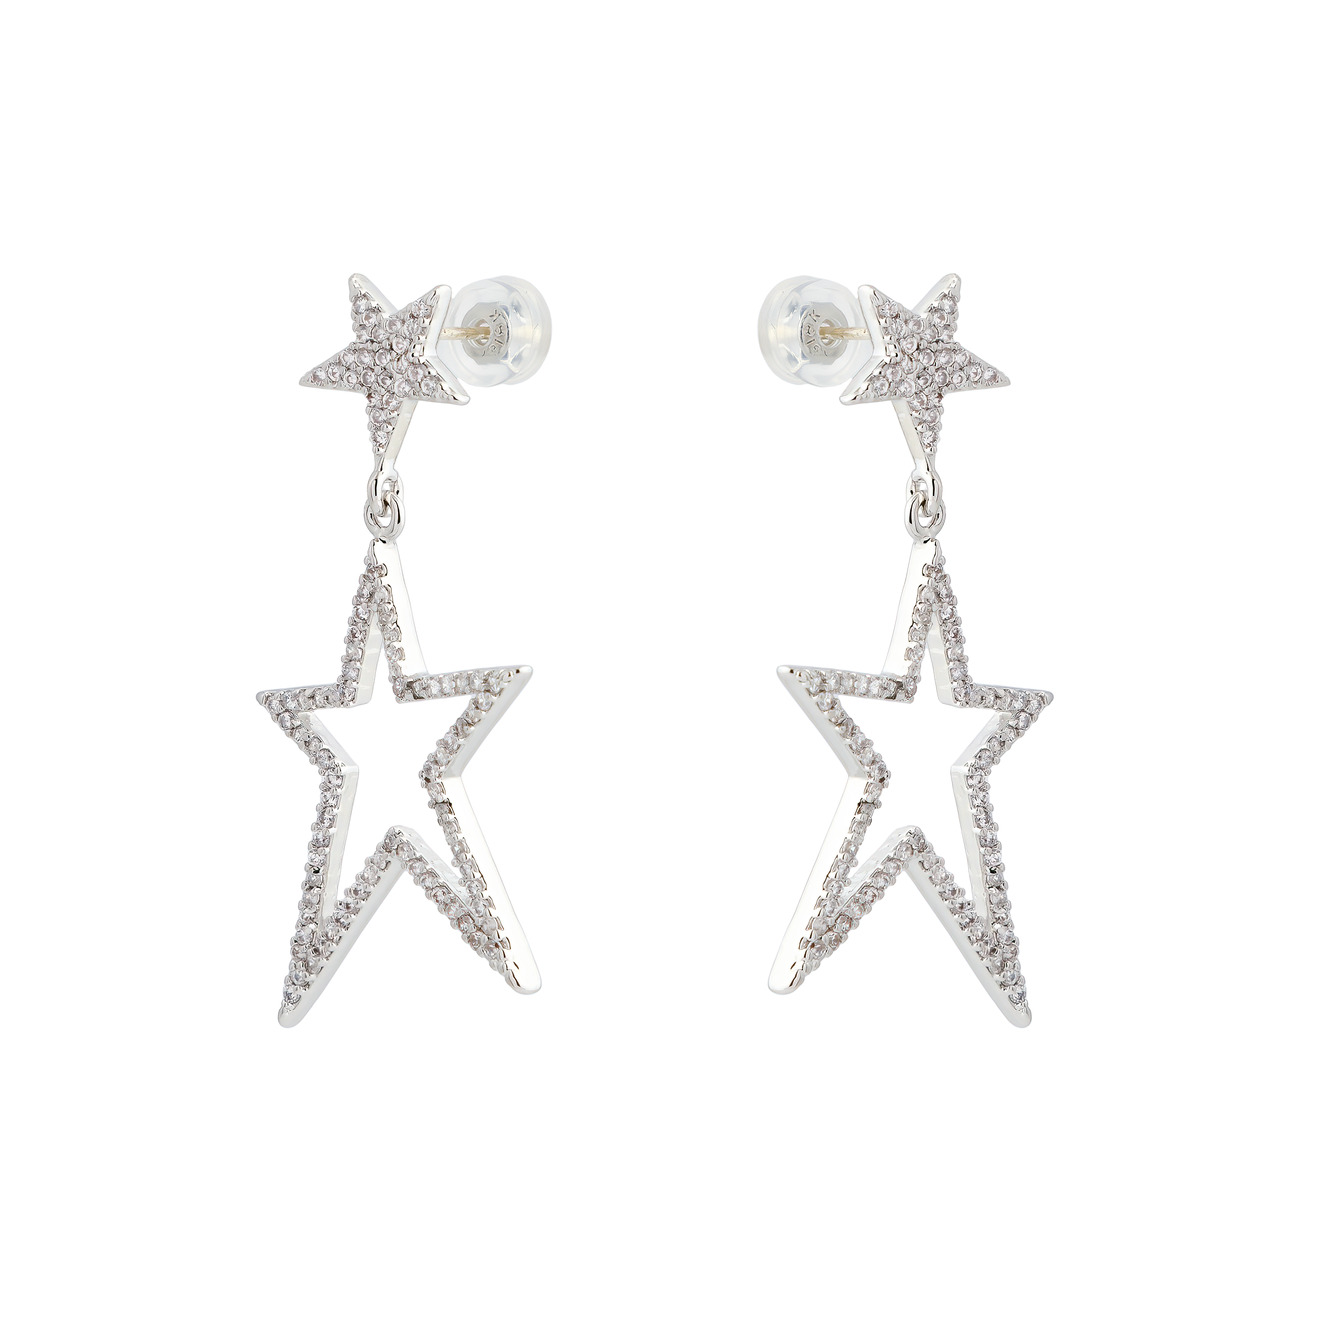 Herald Percy Серебристые тонкие серьги-звезды с кристаллами herald percy серебристые серьги звезды с кристаллами и белыми бусинами